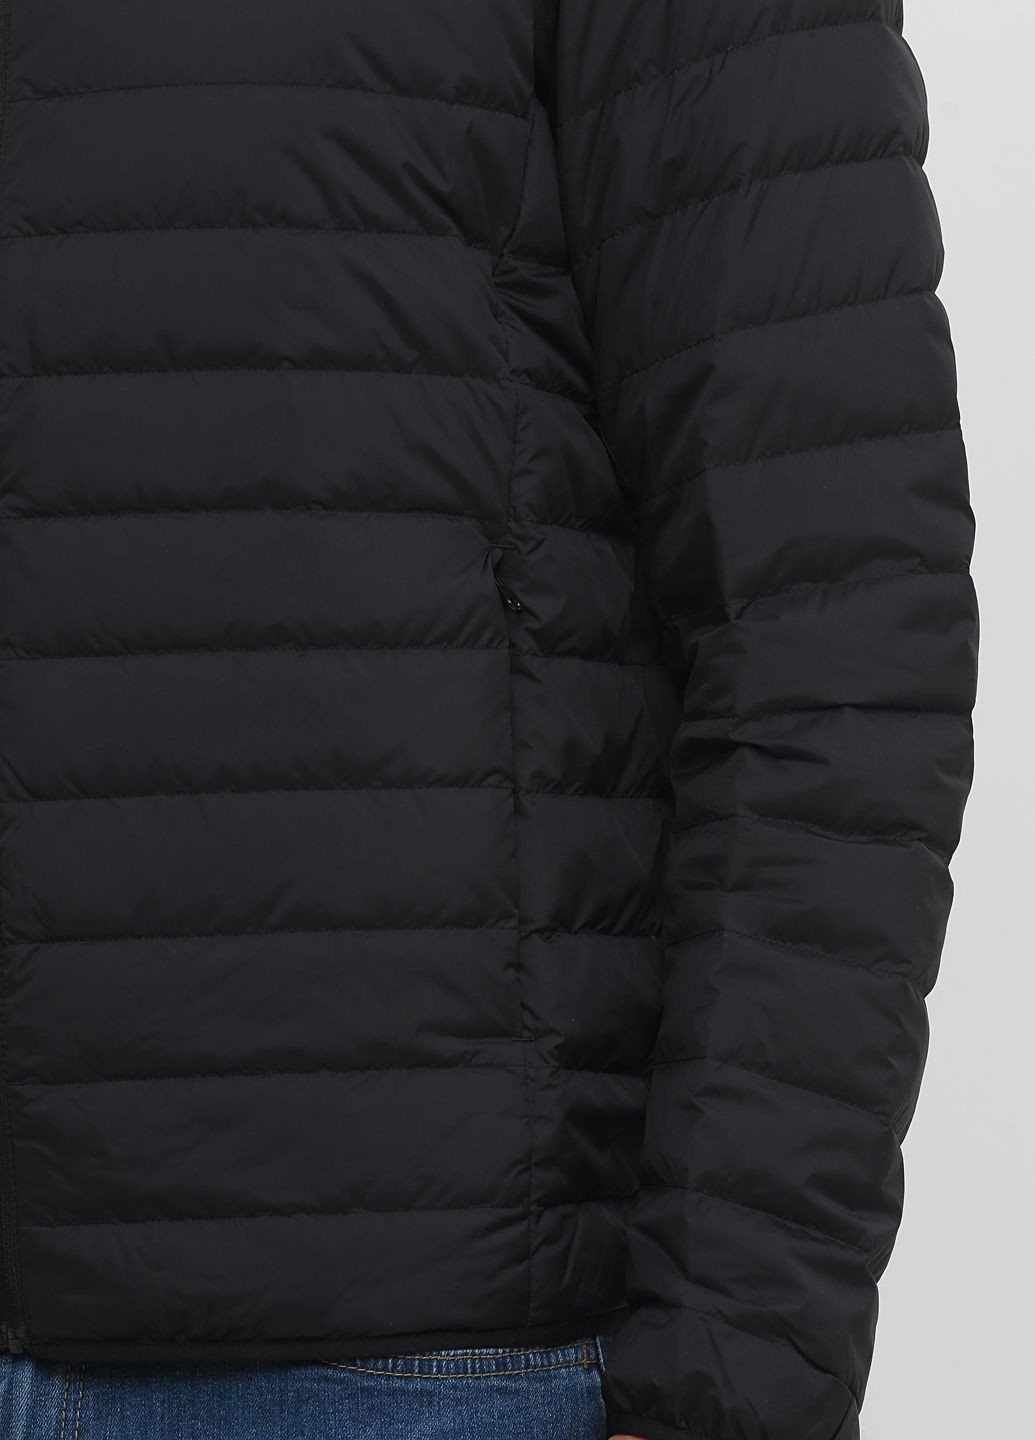 Черная демисезонная куртка демисезонная - мужская куртка uq0317m Uniqlo